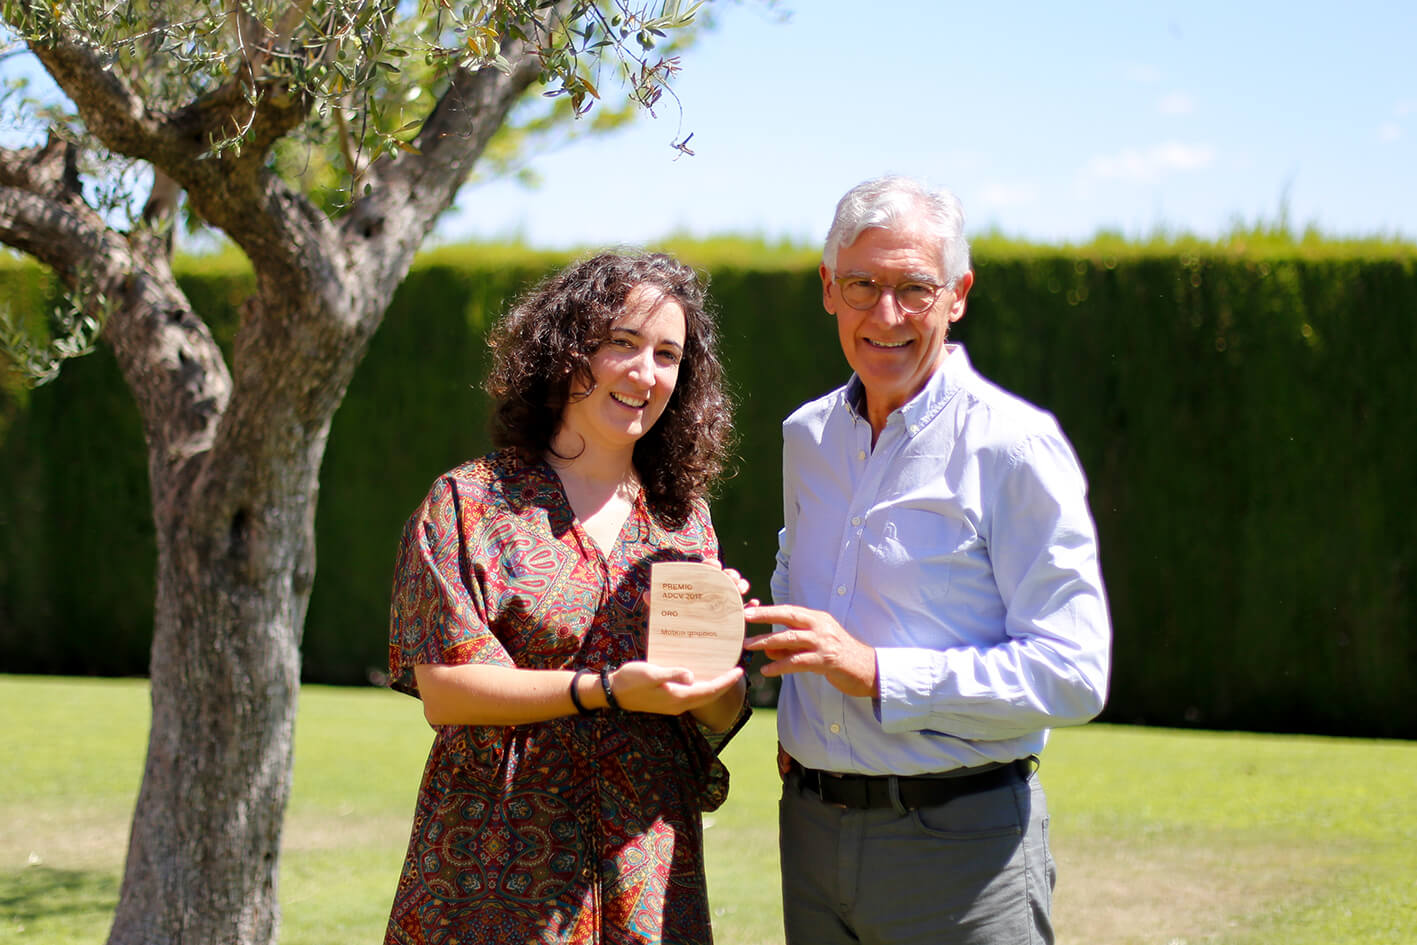 2017'VII'1. Godella (Valencia). Pepe Gimeno y Sonia Megías con el trofeo